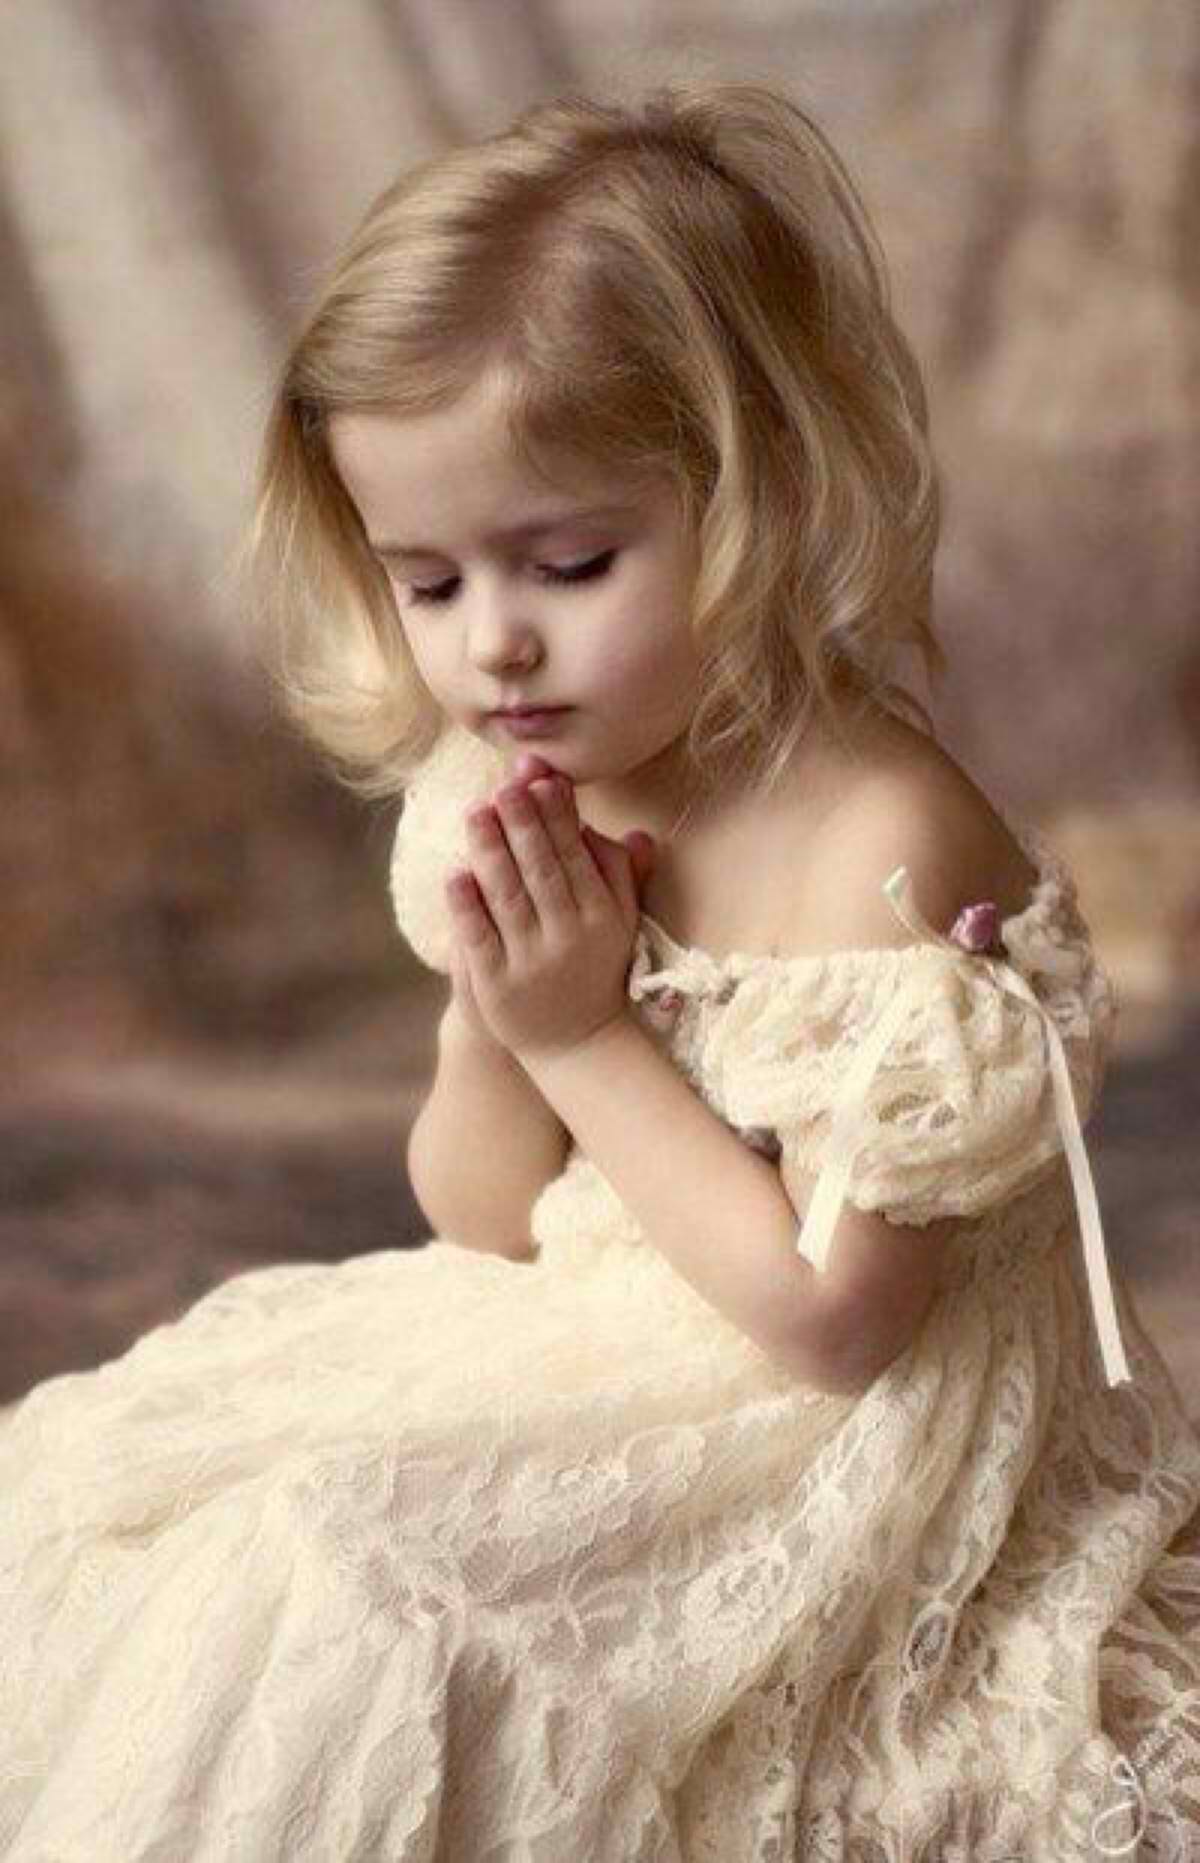 FULLY BEADED! LITTLE GIRL PRAYING